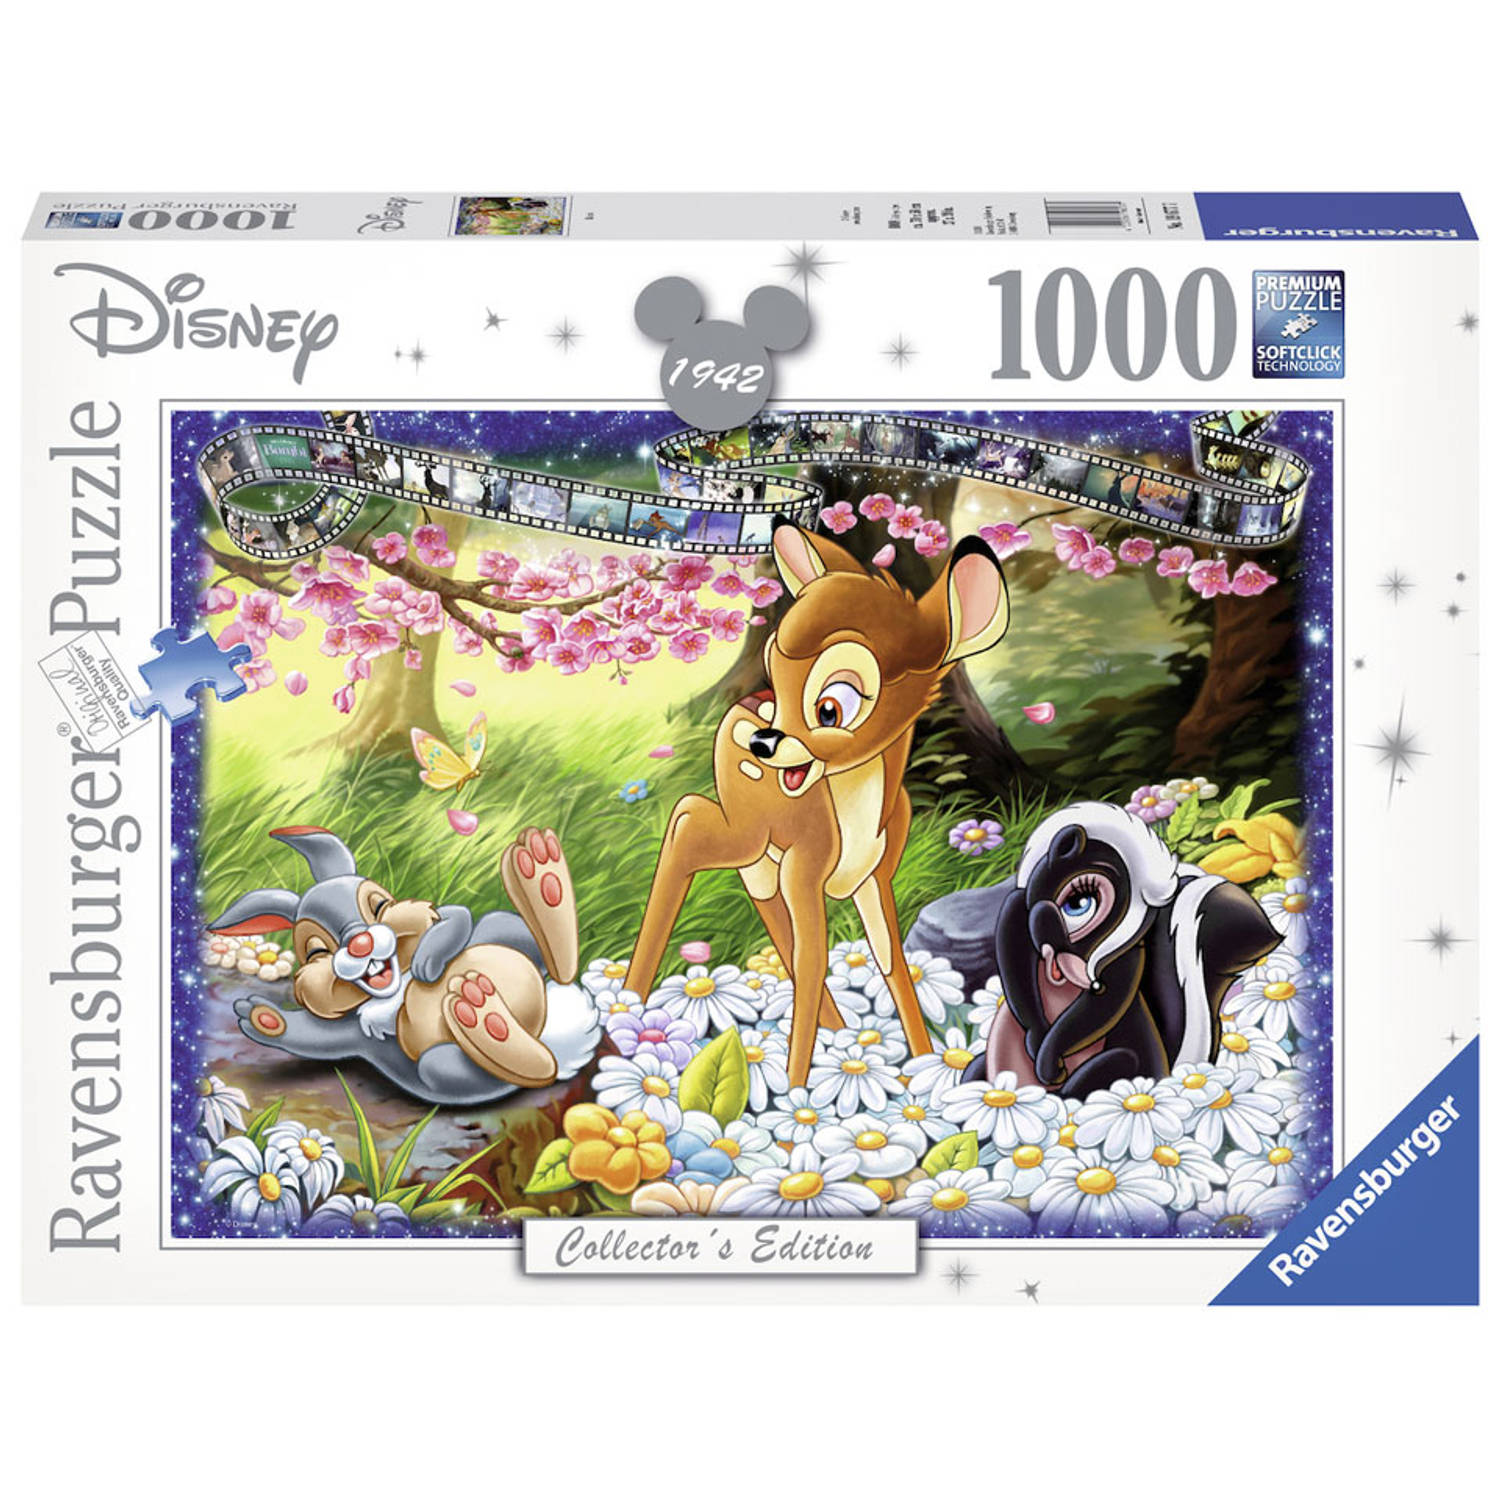 Ravensburger puzzel Disney Bambi - Legpuzzel - 1000 stukjes